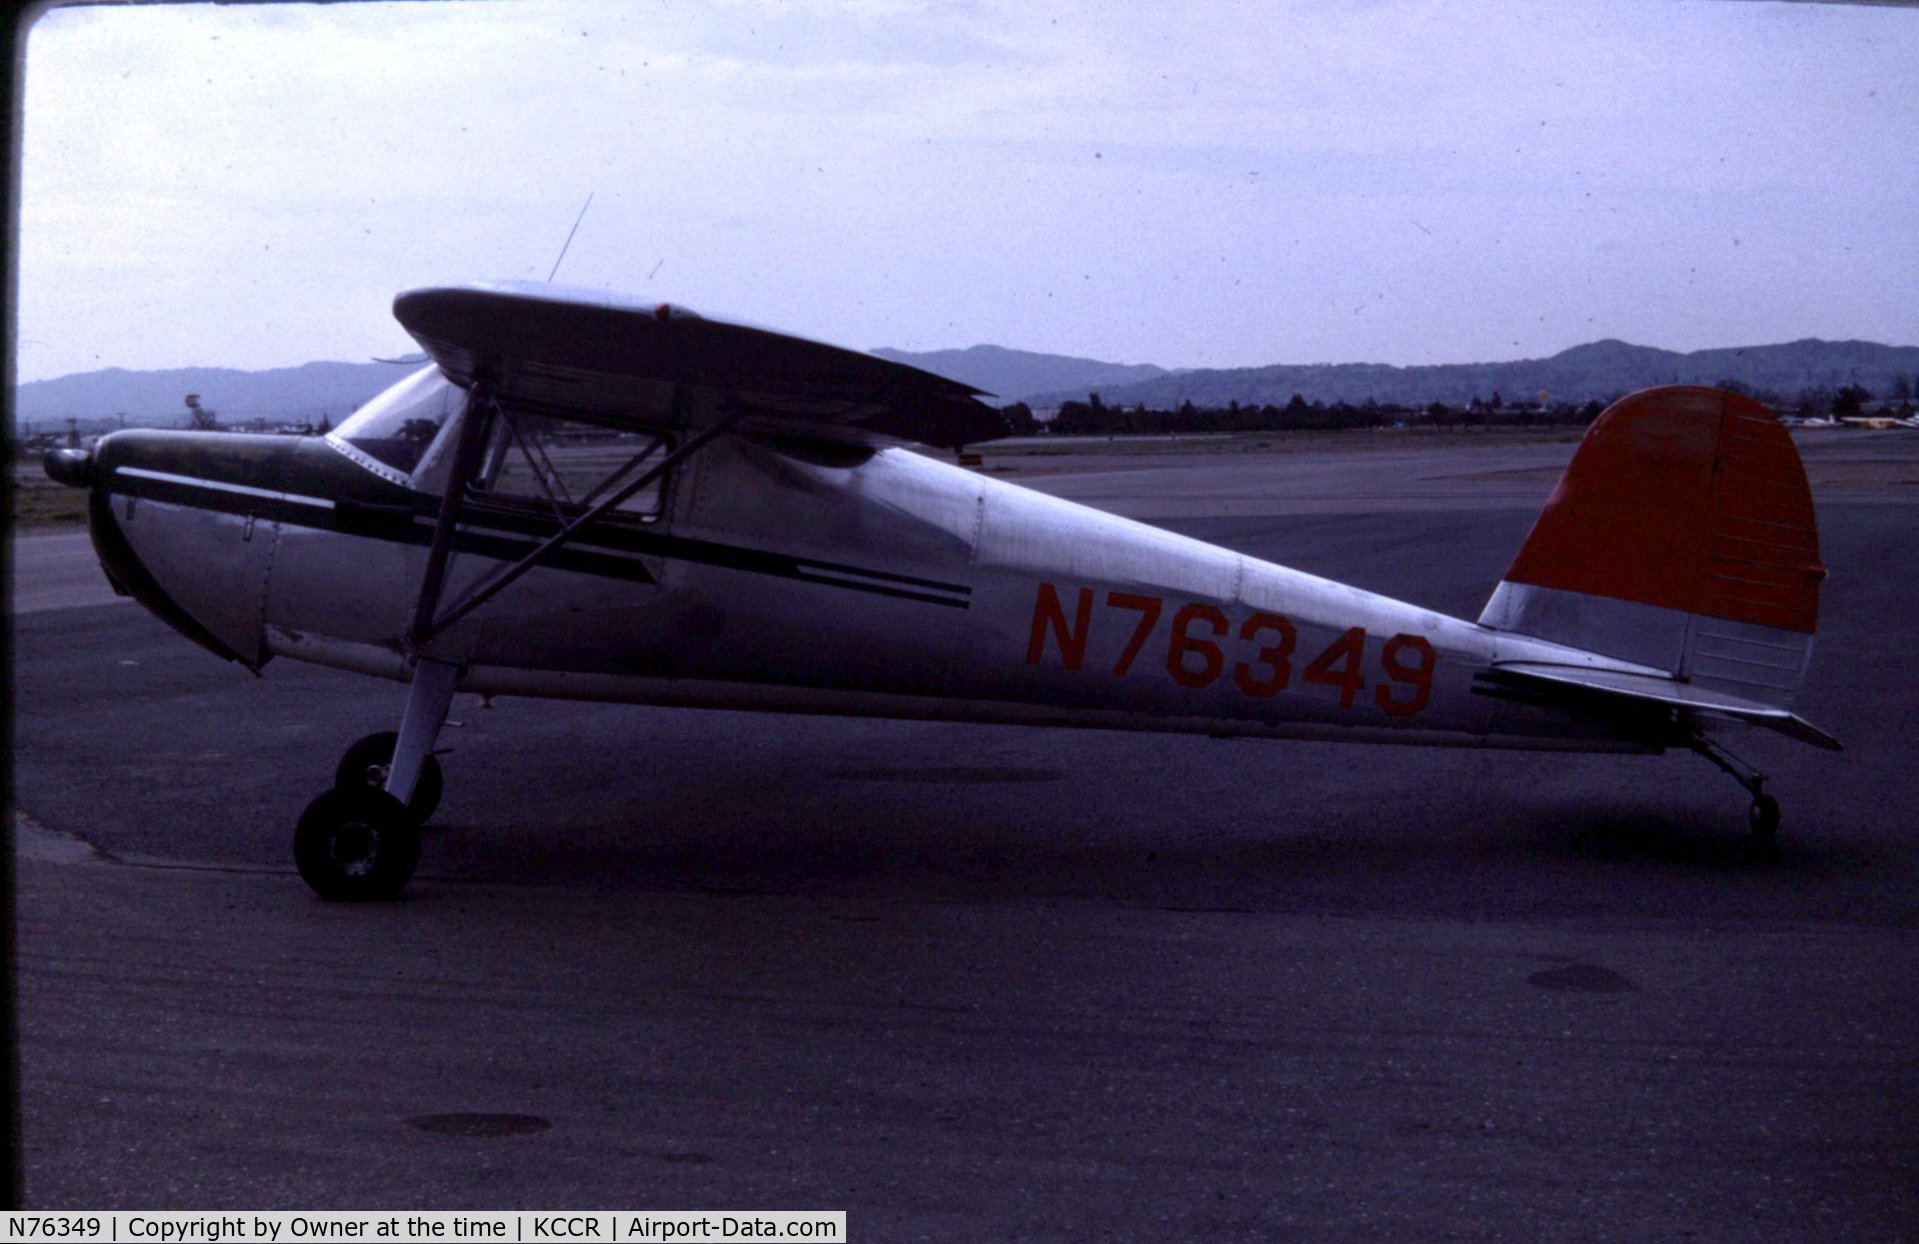 N76349, 1946 Cessna 120 C/N 10766, N76349 in 1976
Great memories with this plane